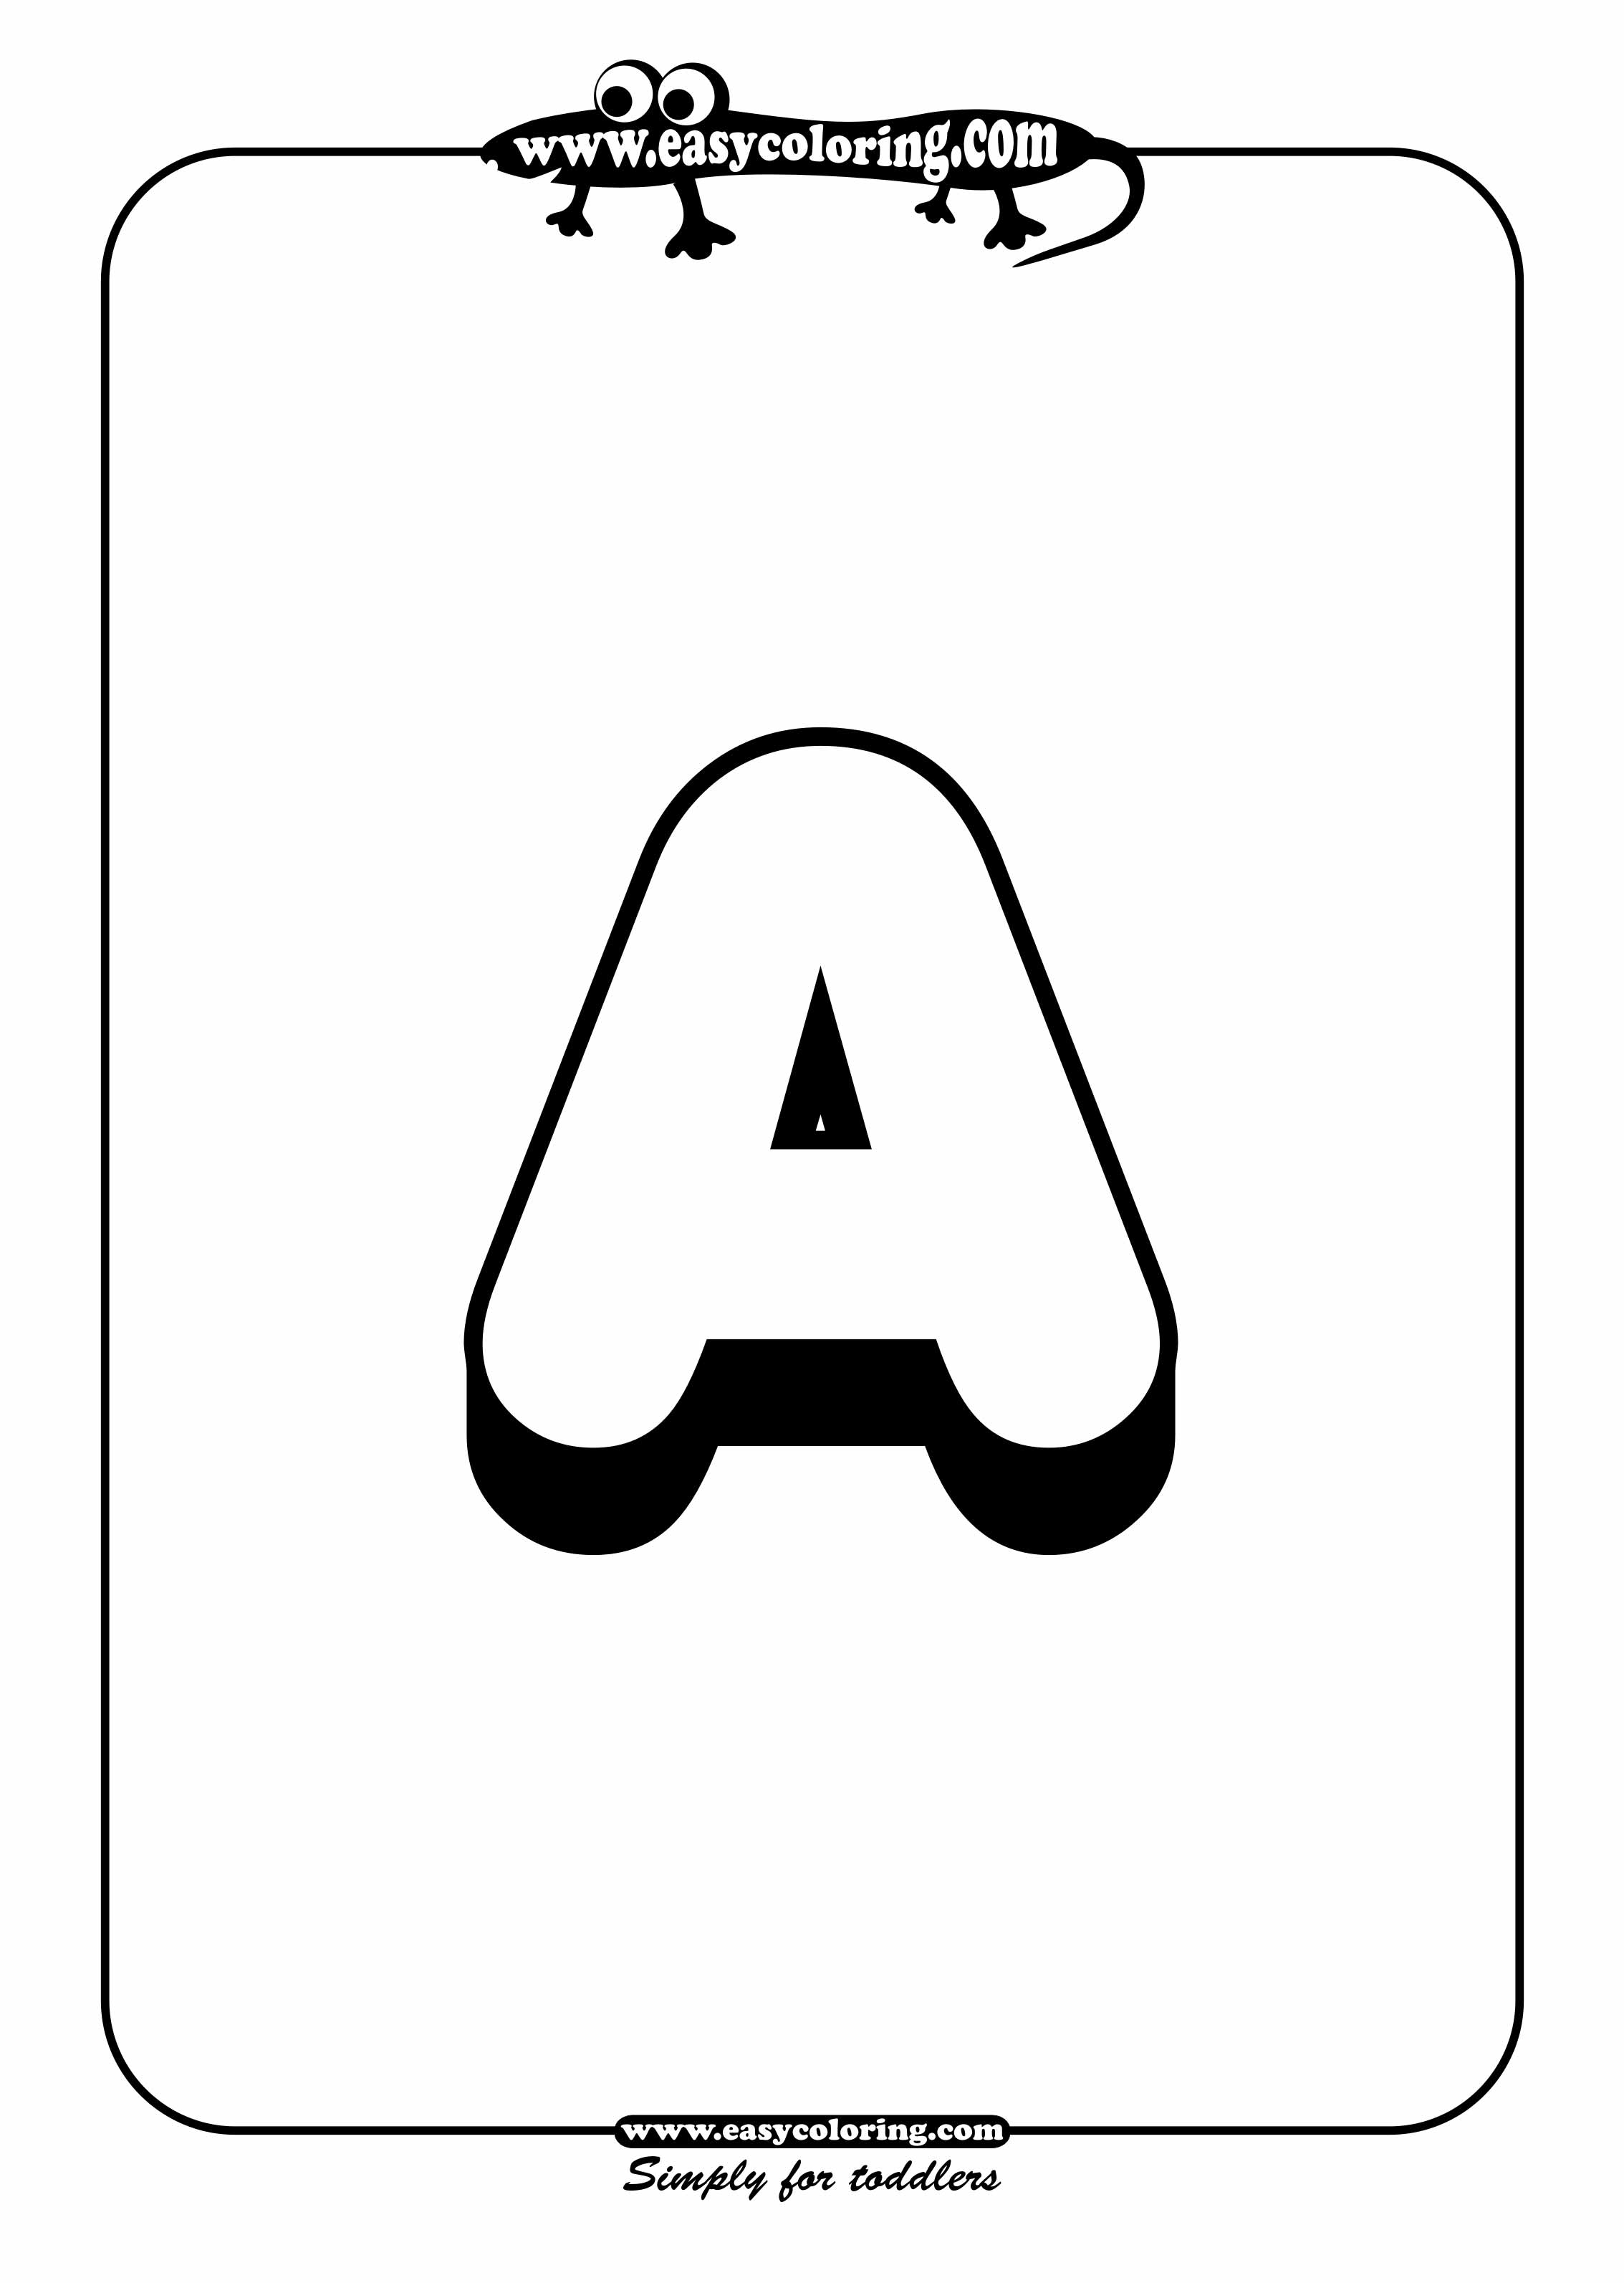 Malvorlage: Alphabet (lehrreich) #125041 - Kostenlose Malvorlagen zum Ausdrucken